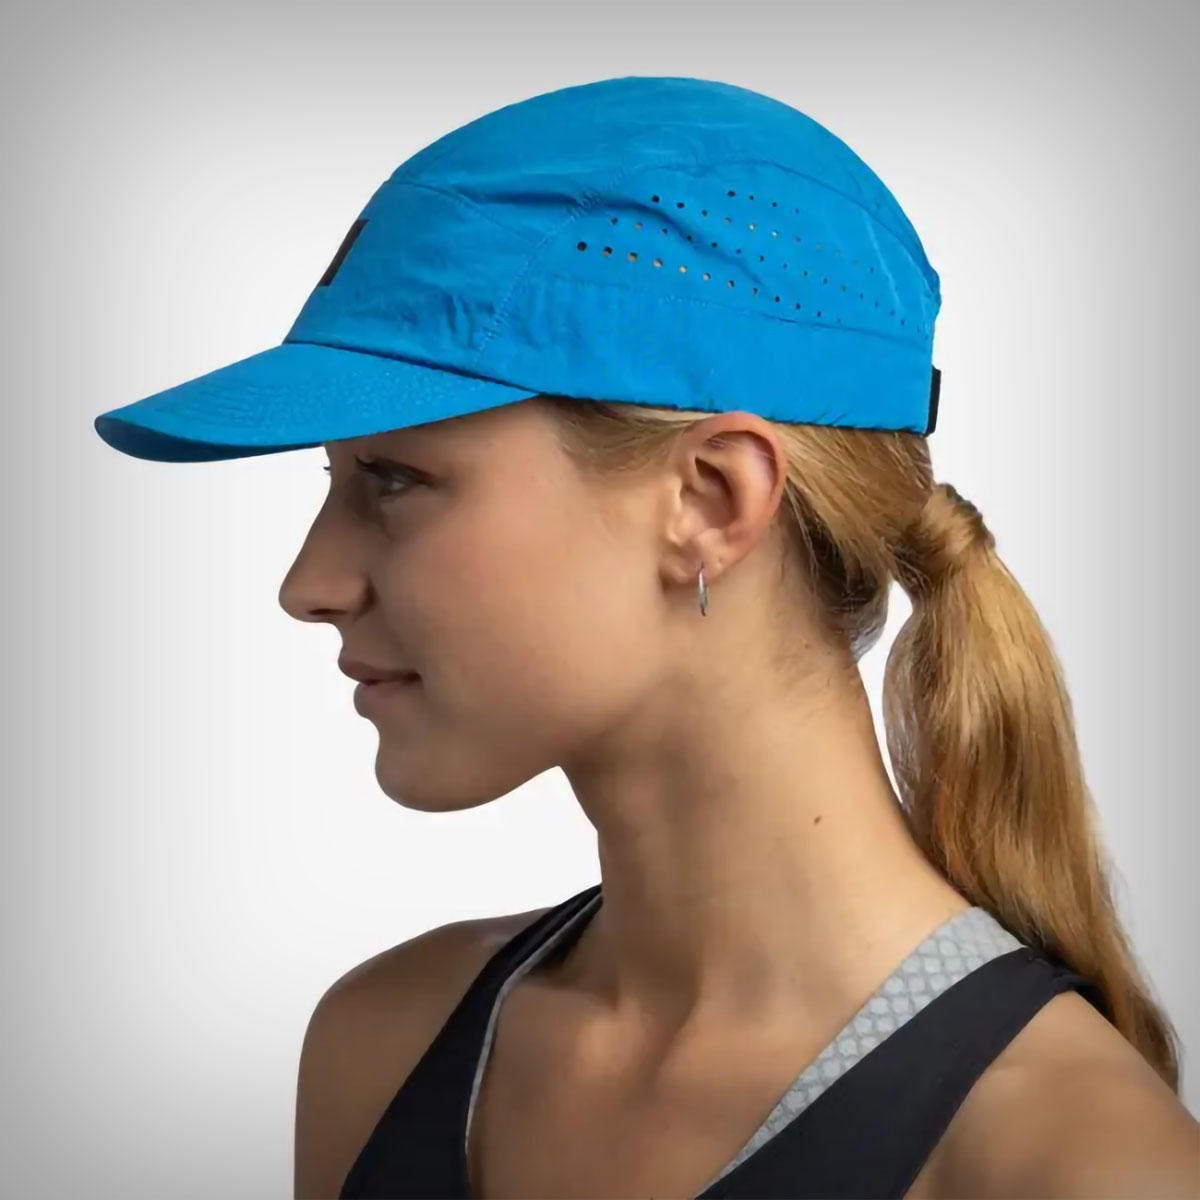 BUFF presenta la nueva Speed Cap, una gorra ultraligera y muy transpirable perfecta para los entrenamientos más exigentes